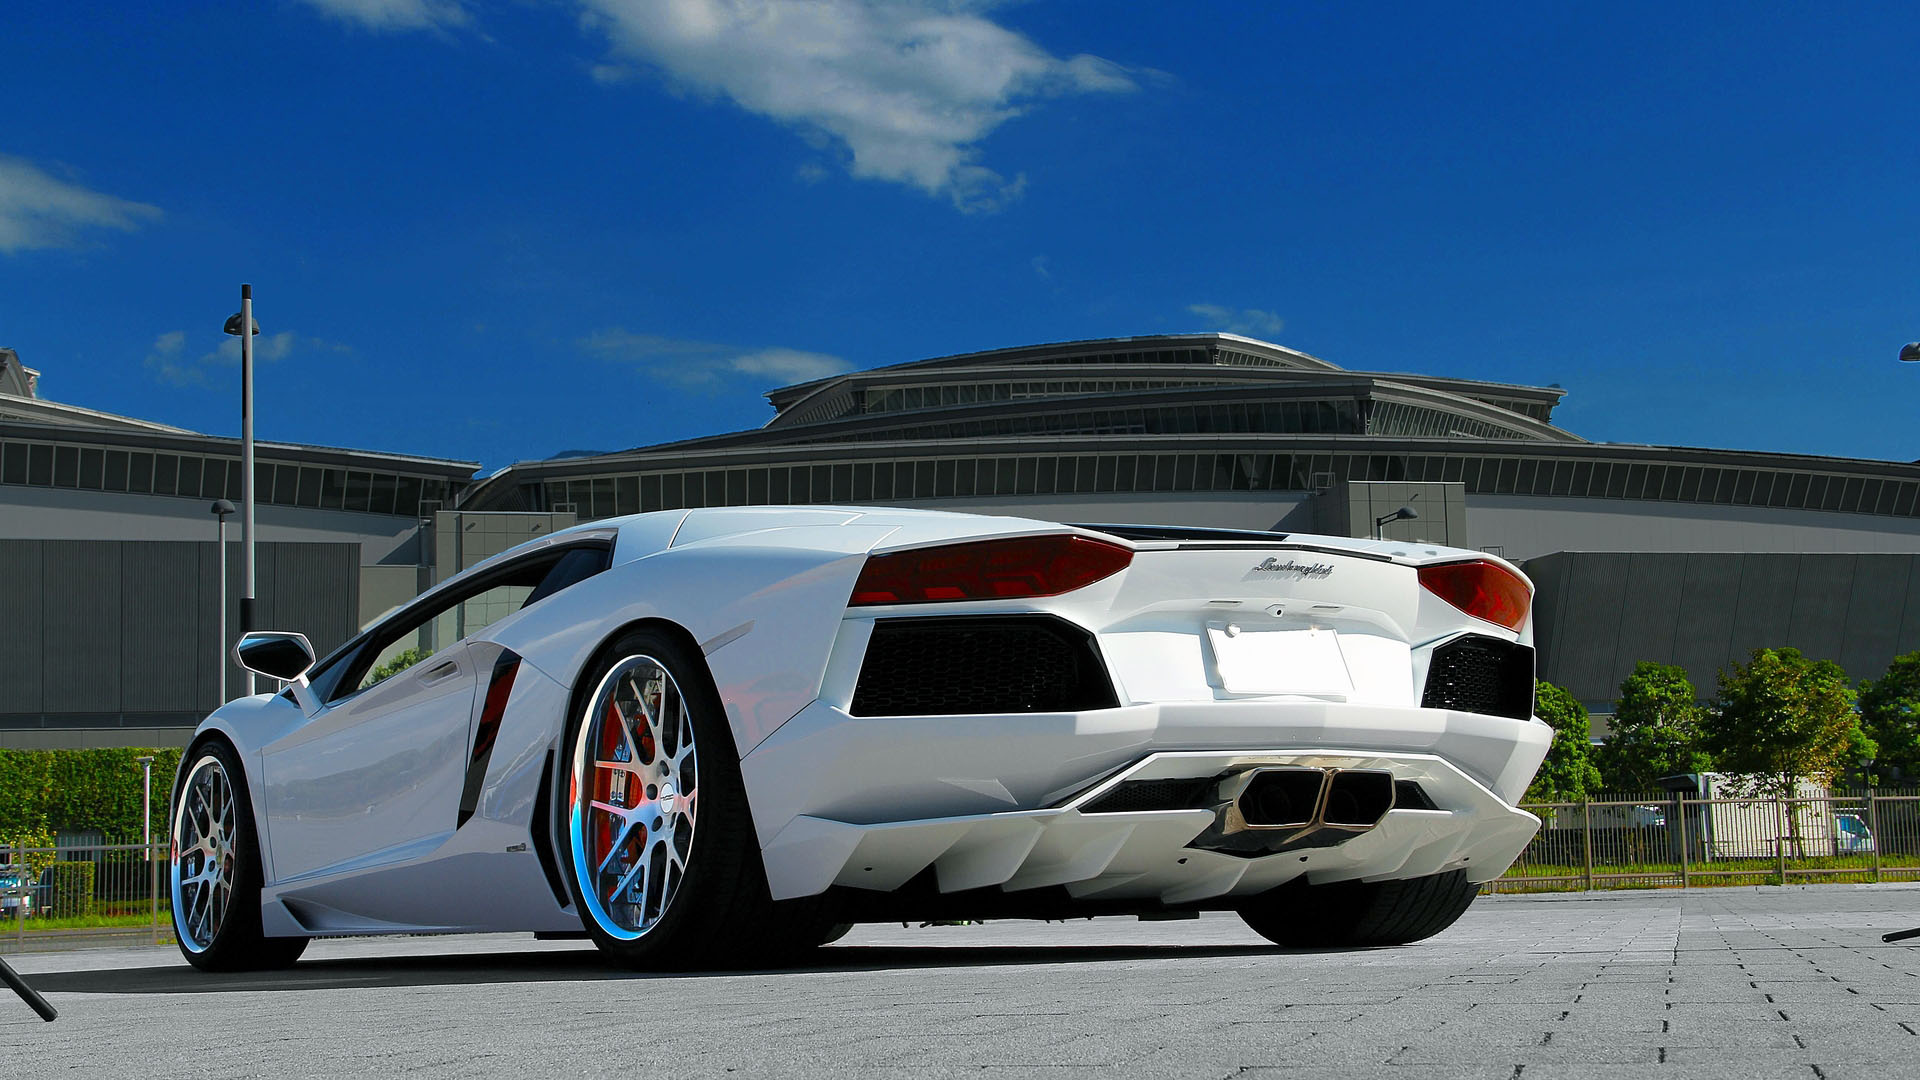 Hình nền siêu xe Lamborghini full HD đẹp nhất - [Kích thước hình ảnh: 1920x1080 px]